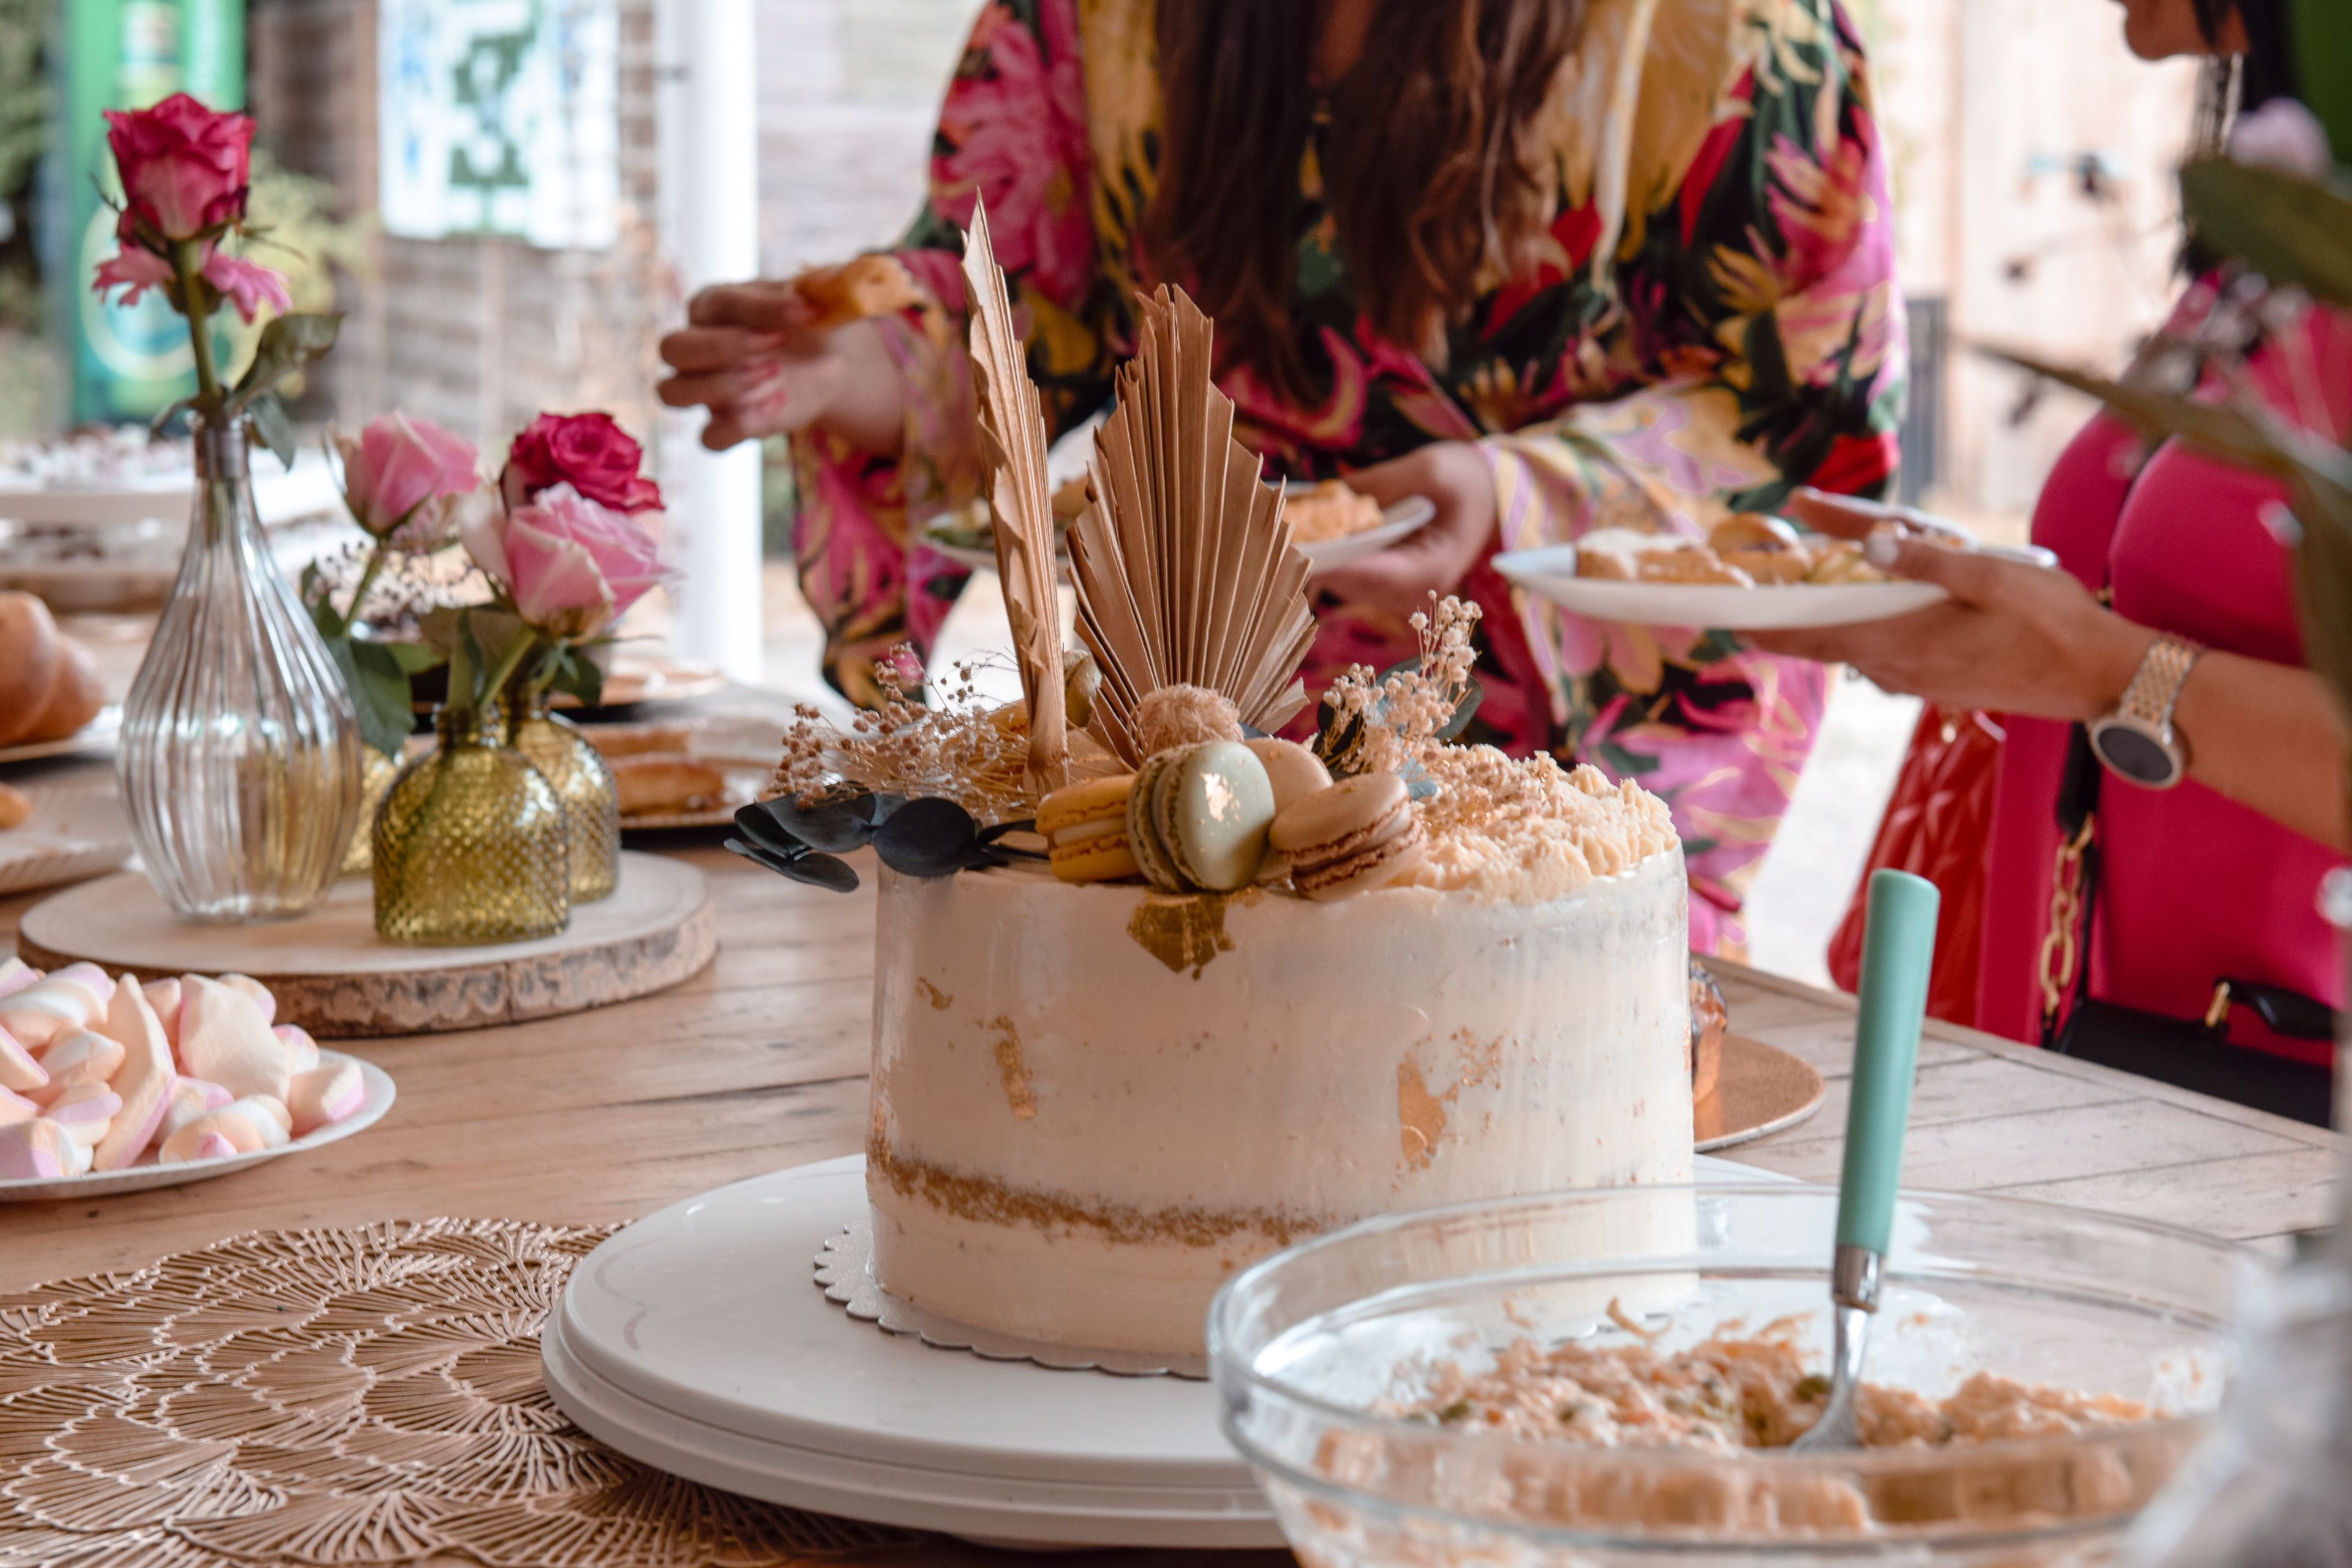 Auf dem Bild ist eine originell verzierte Torte dargestellt auf einem Tisch mit weiterem Backwerk und Süßigkeiten.